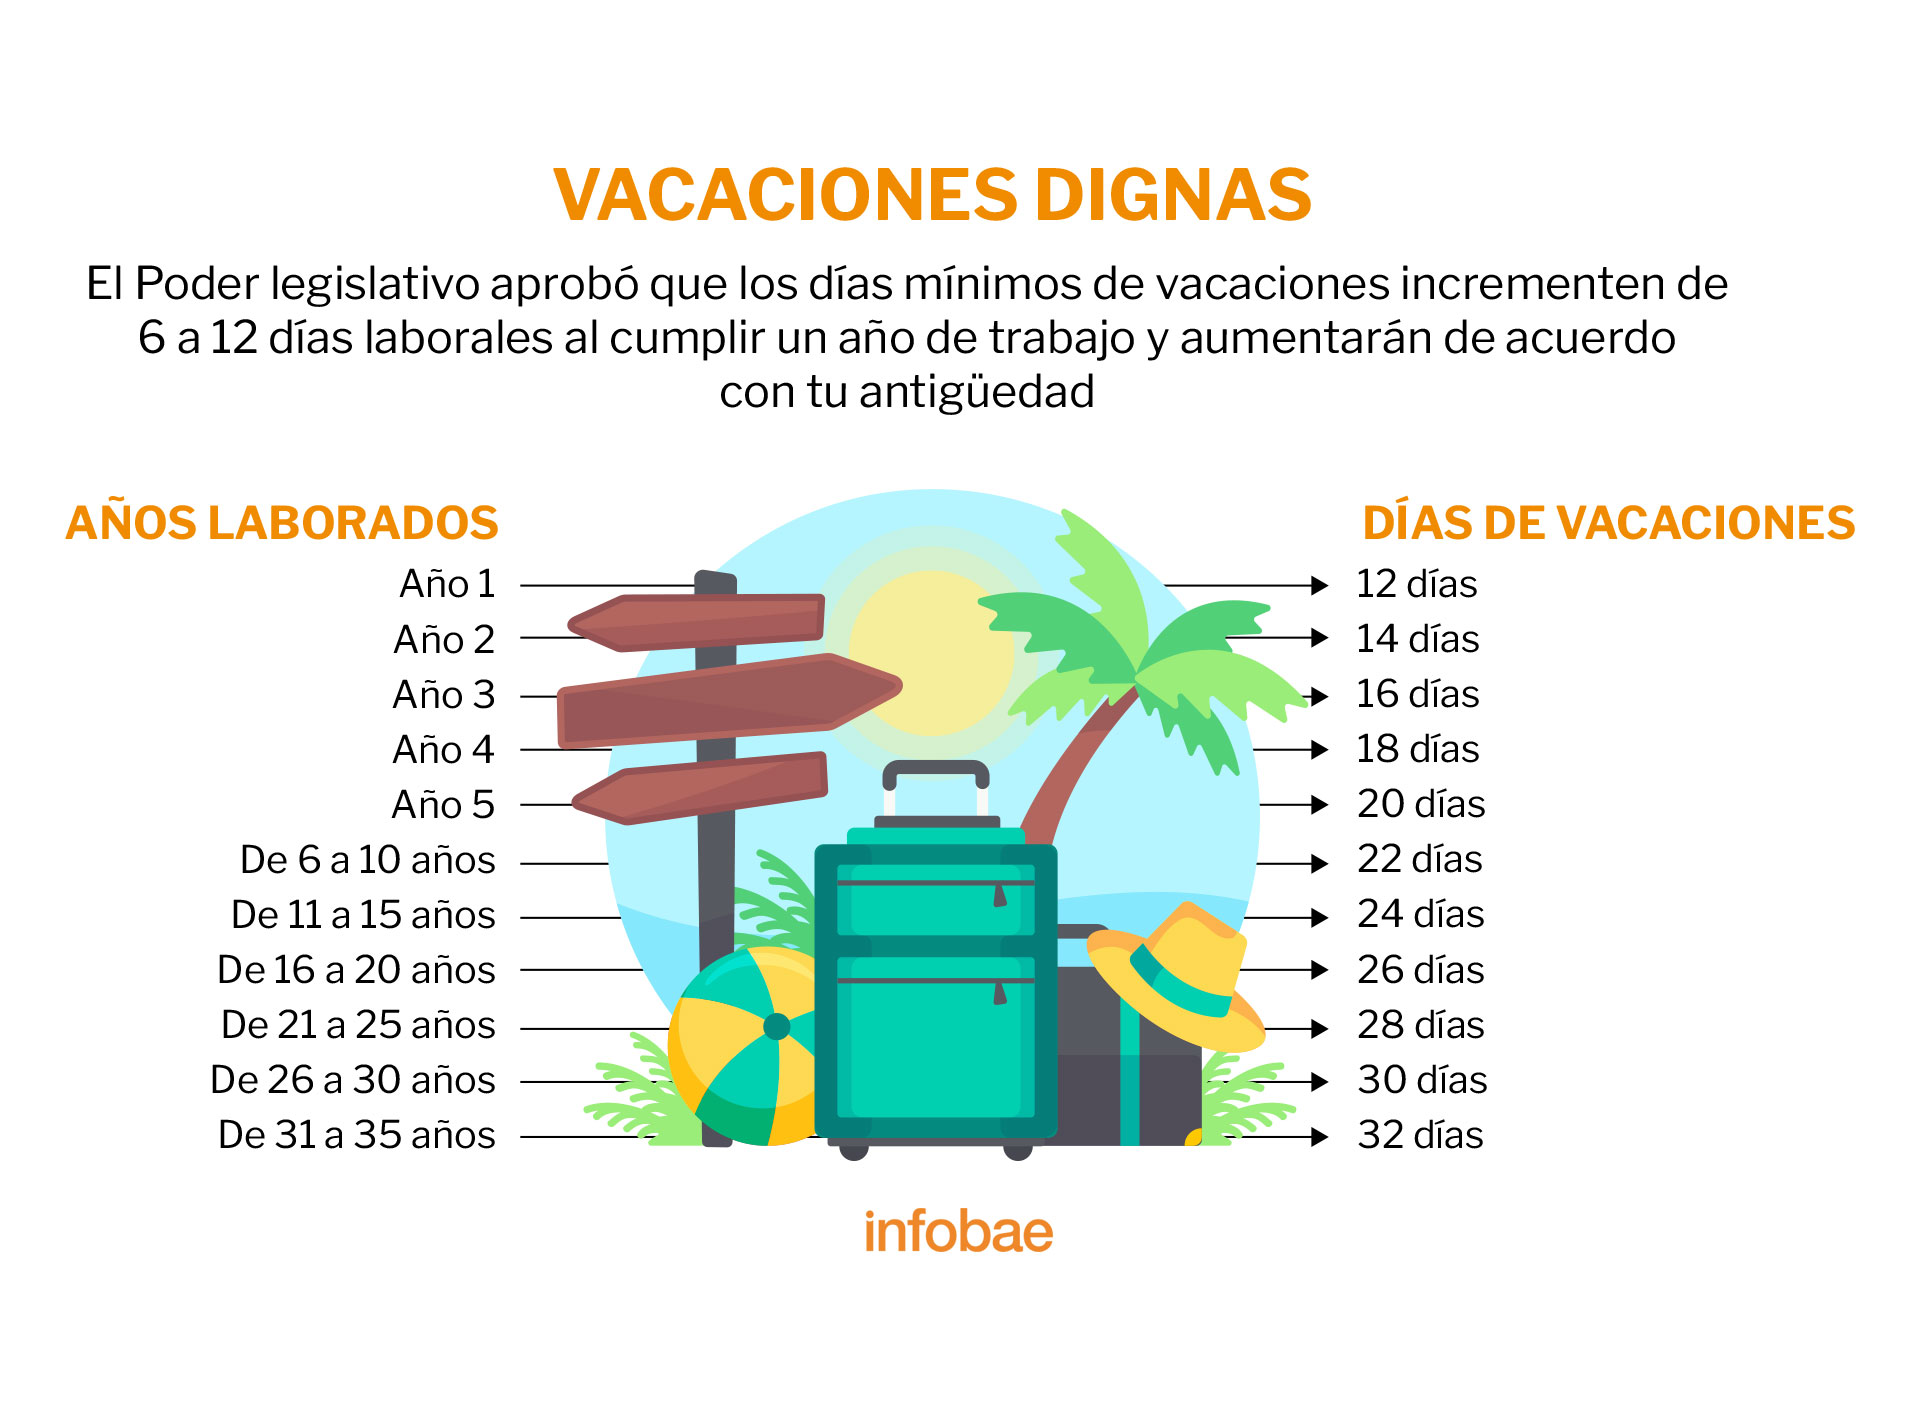 Tabla vacaciones 2023. (Foto: Infobae)